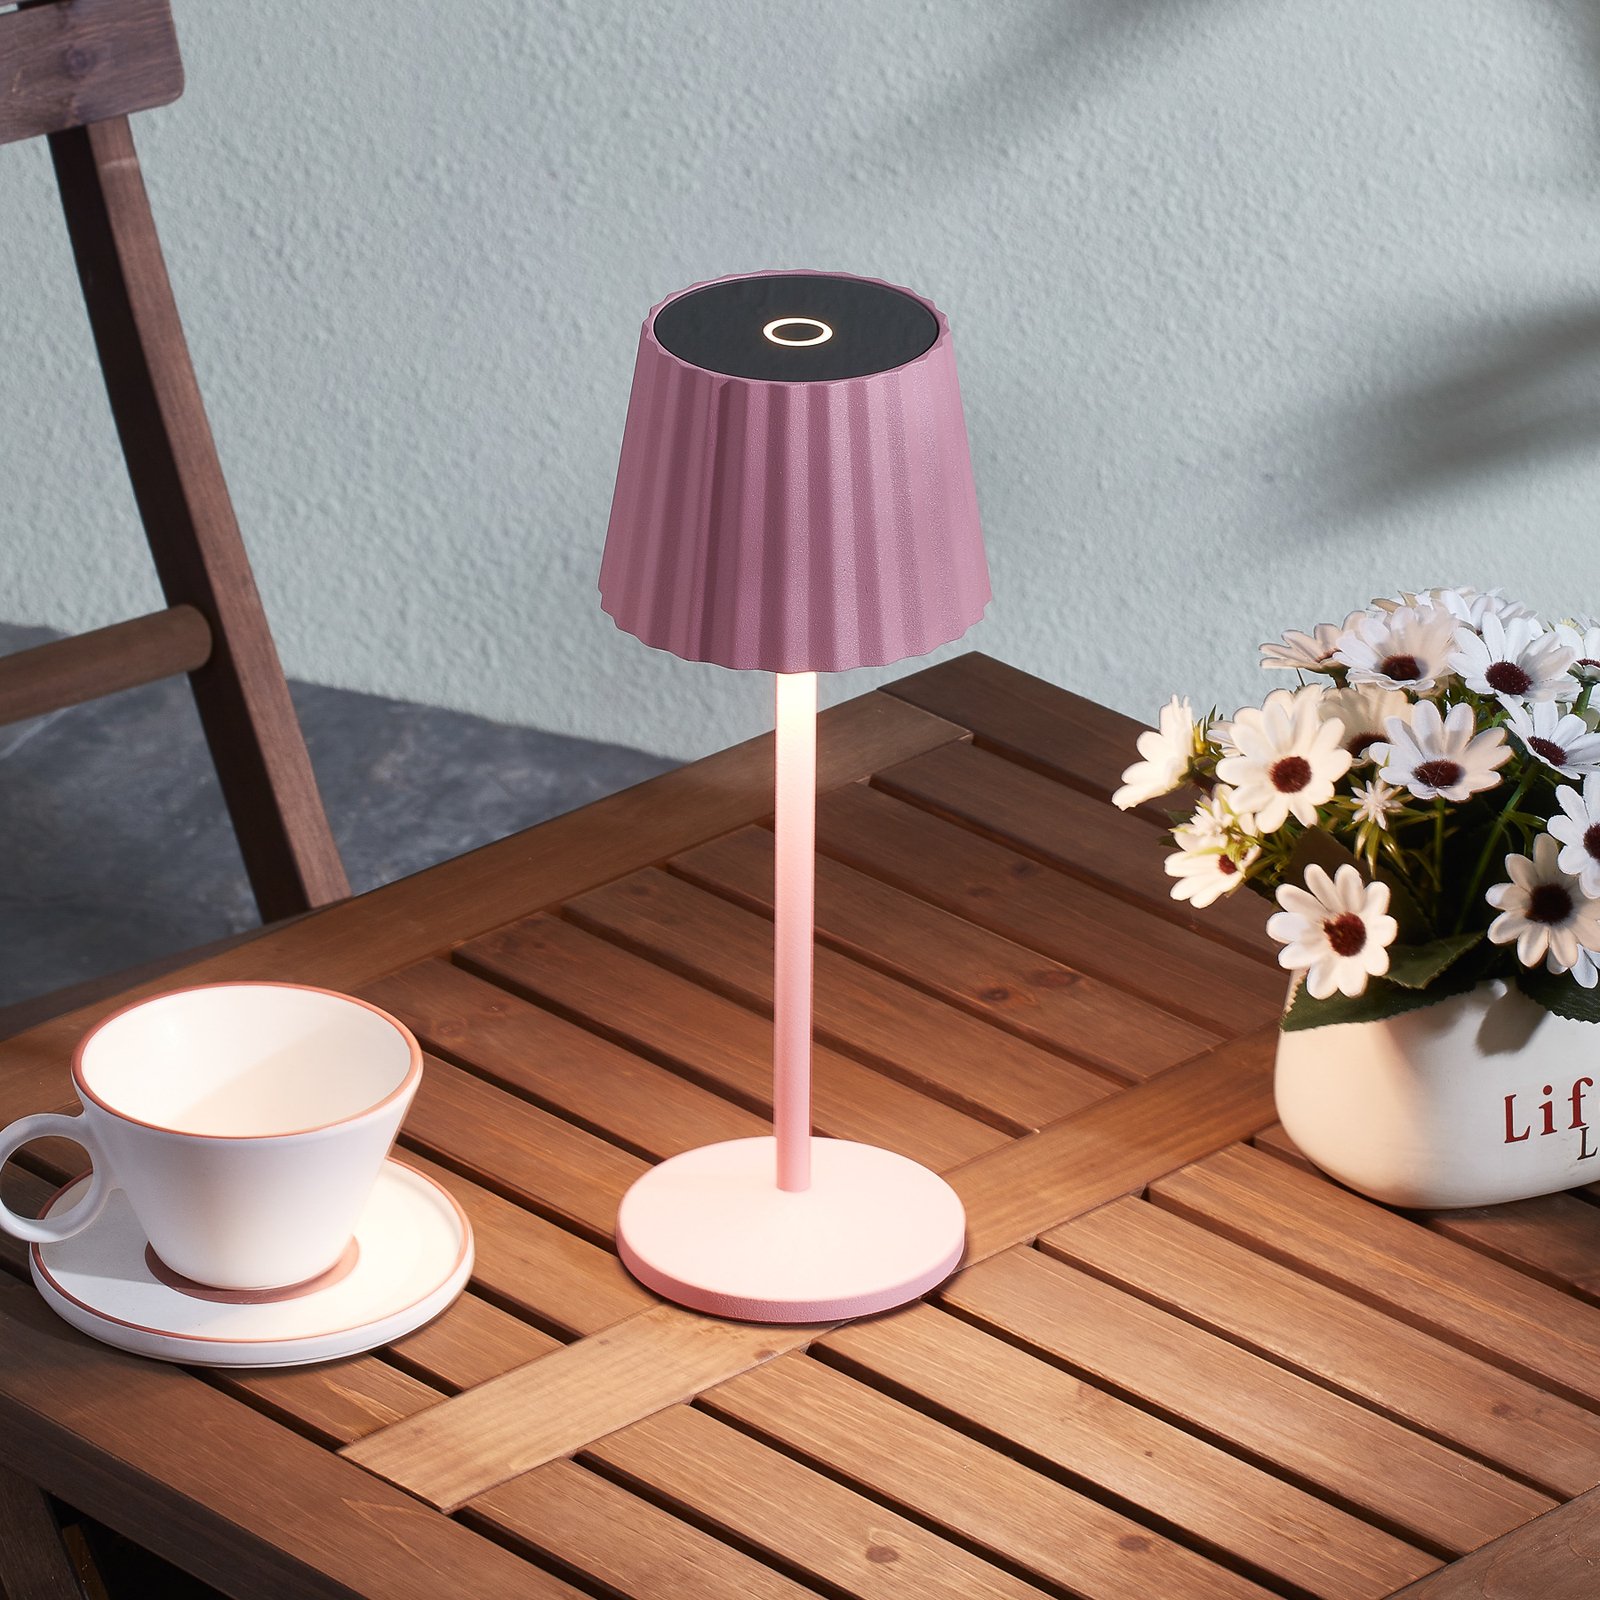 Lindby lampe de table LED rechargeable Esali, rose, set de 2, alu